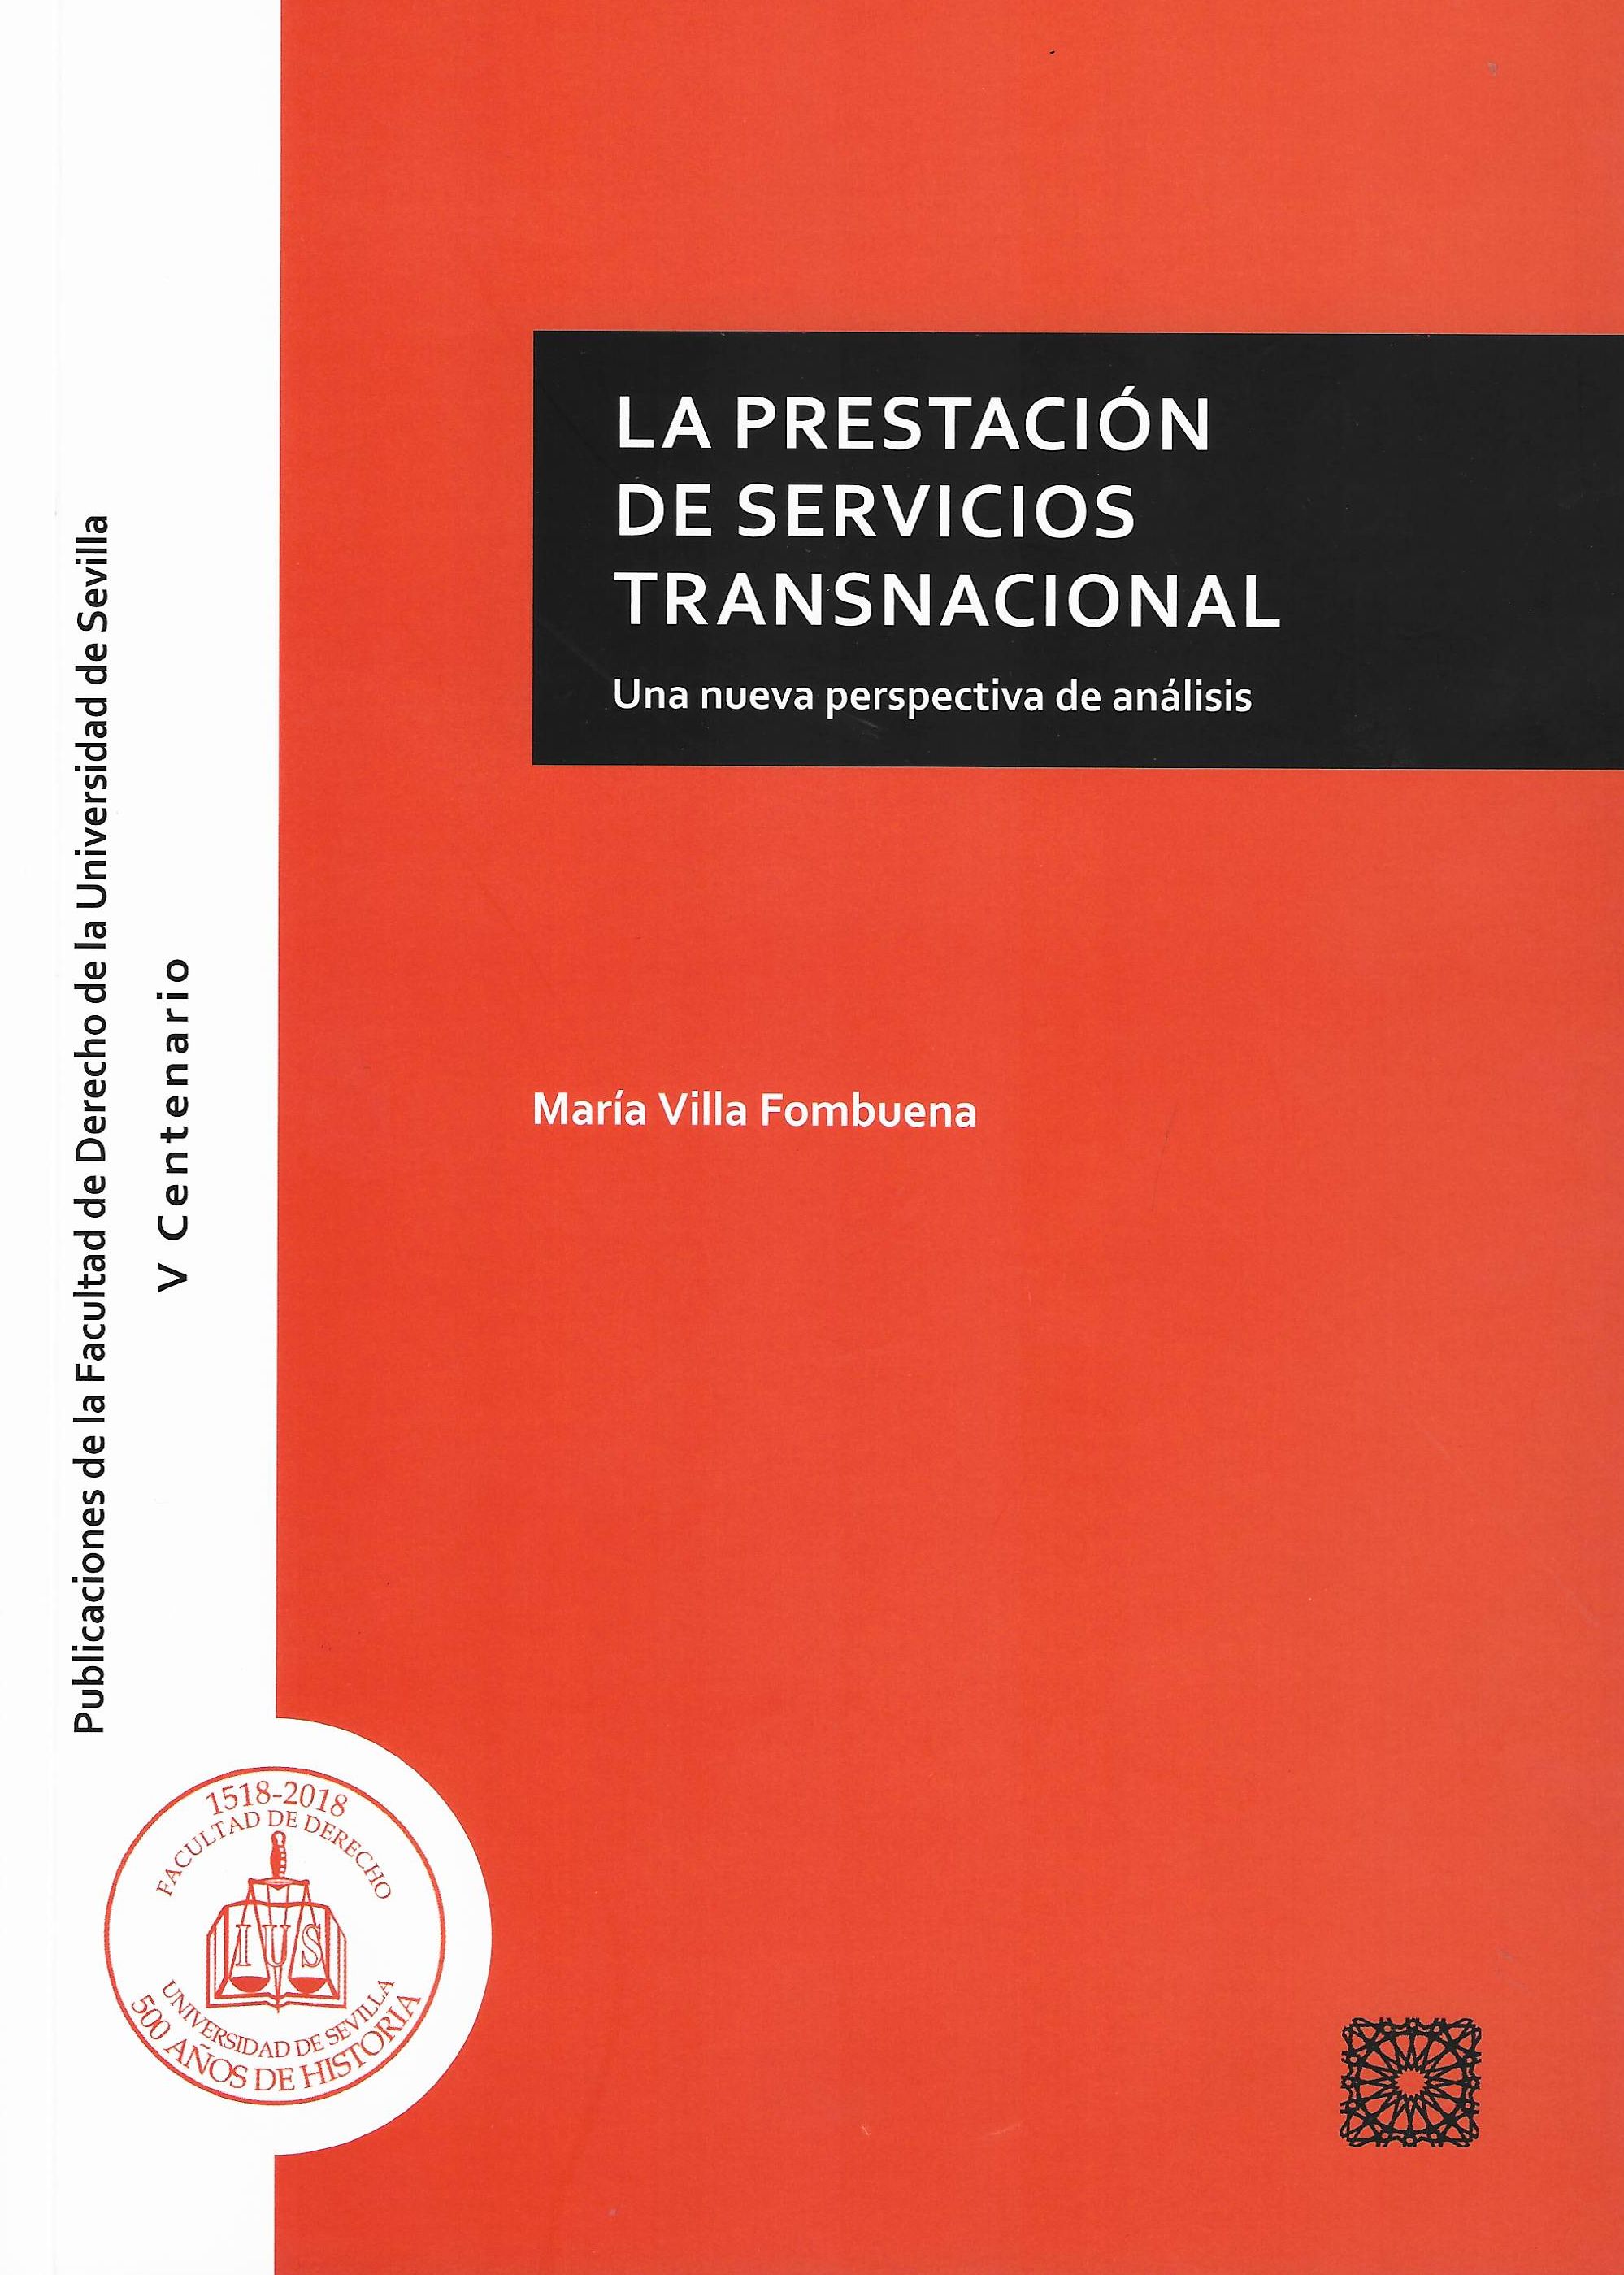 Imagen de portada del libro La prestación de servicios transnacional